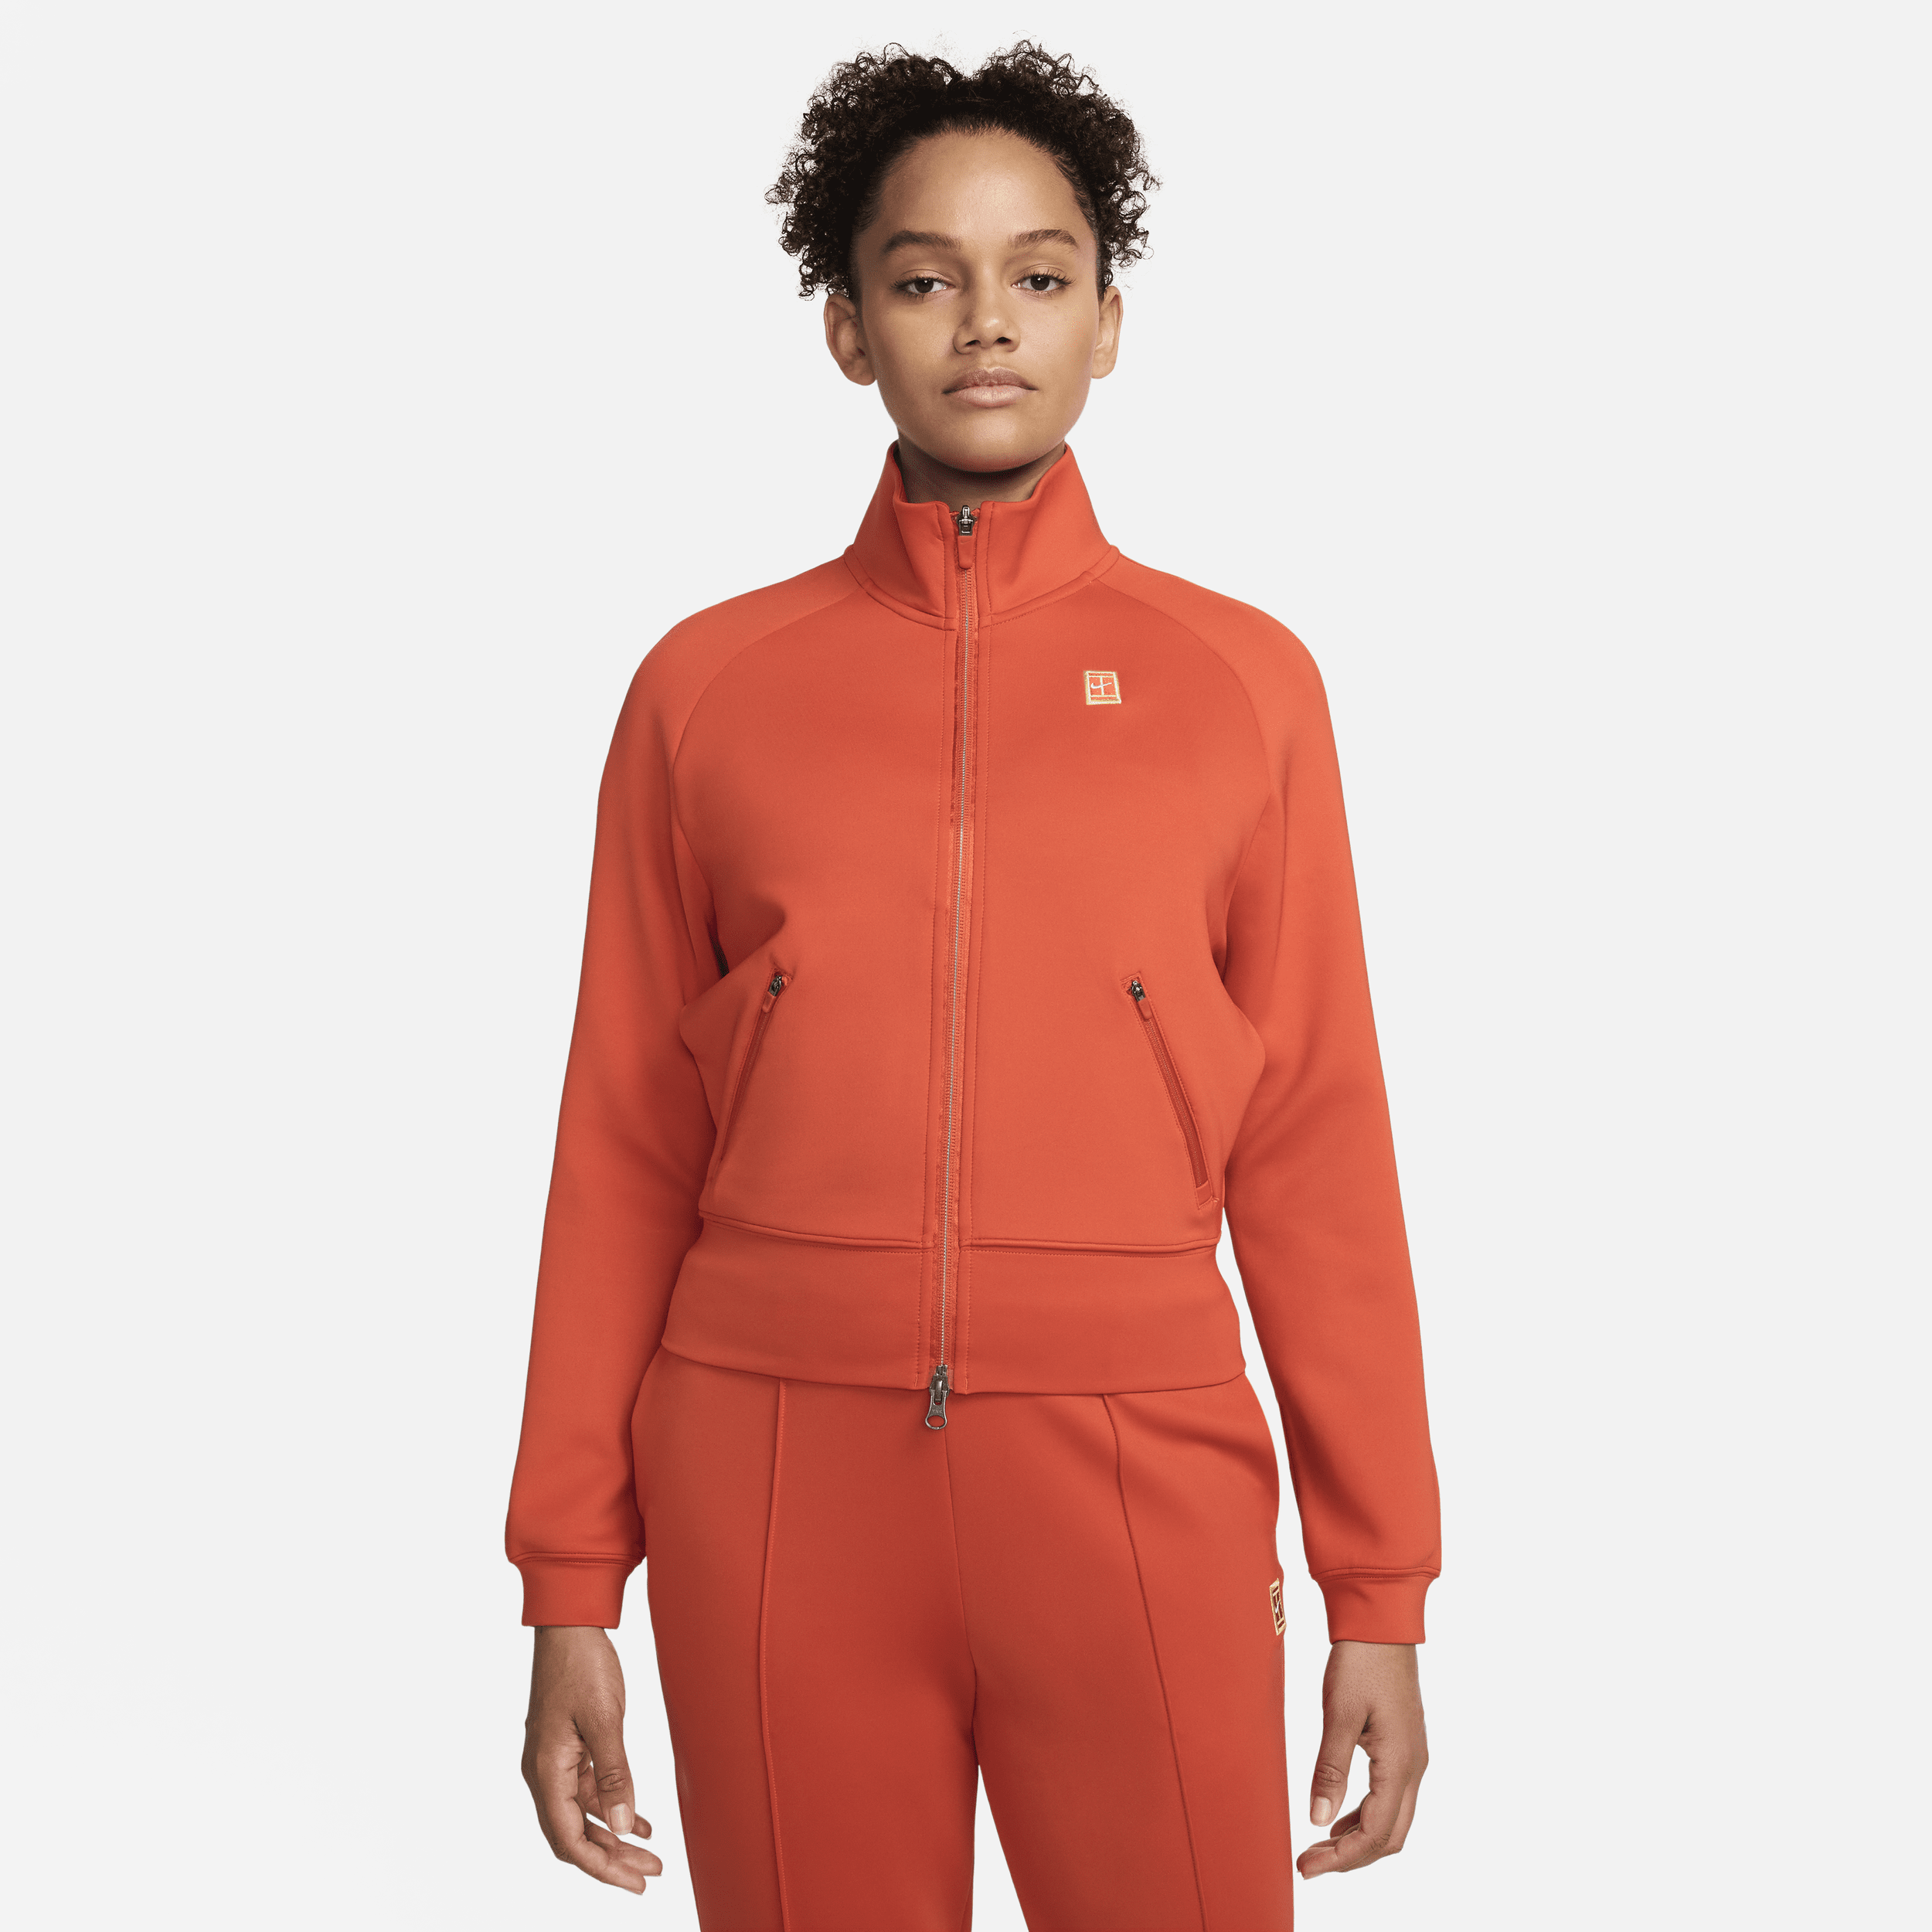 Giacca da tennis con zip a tutta lunghezza NikeCourt - Donna - Arancione